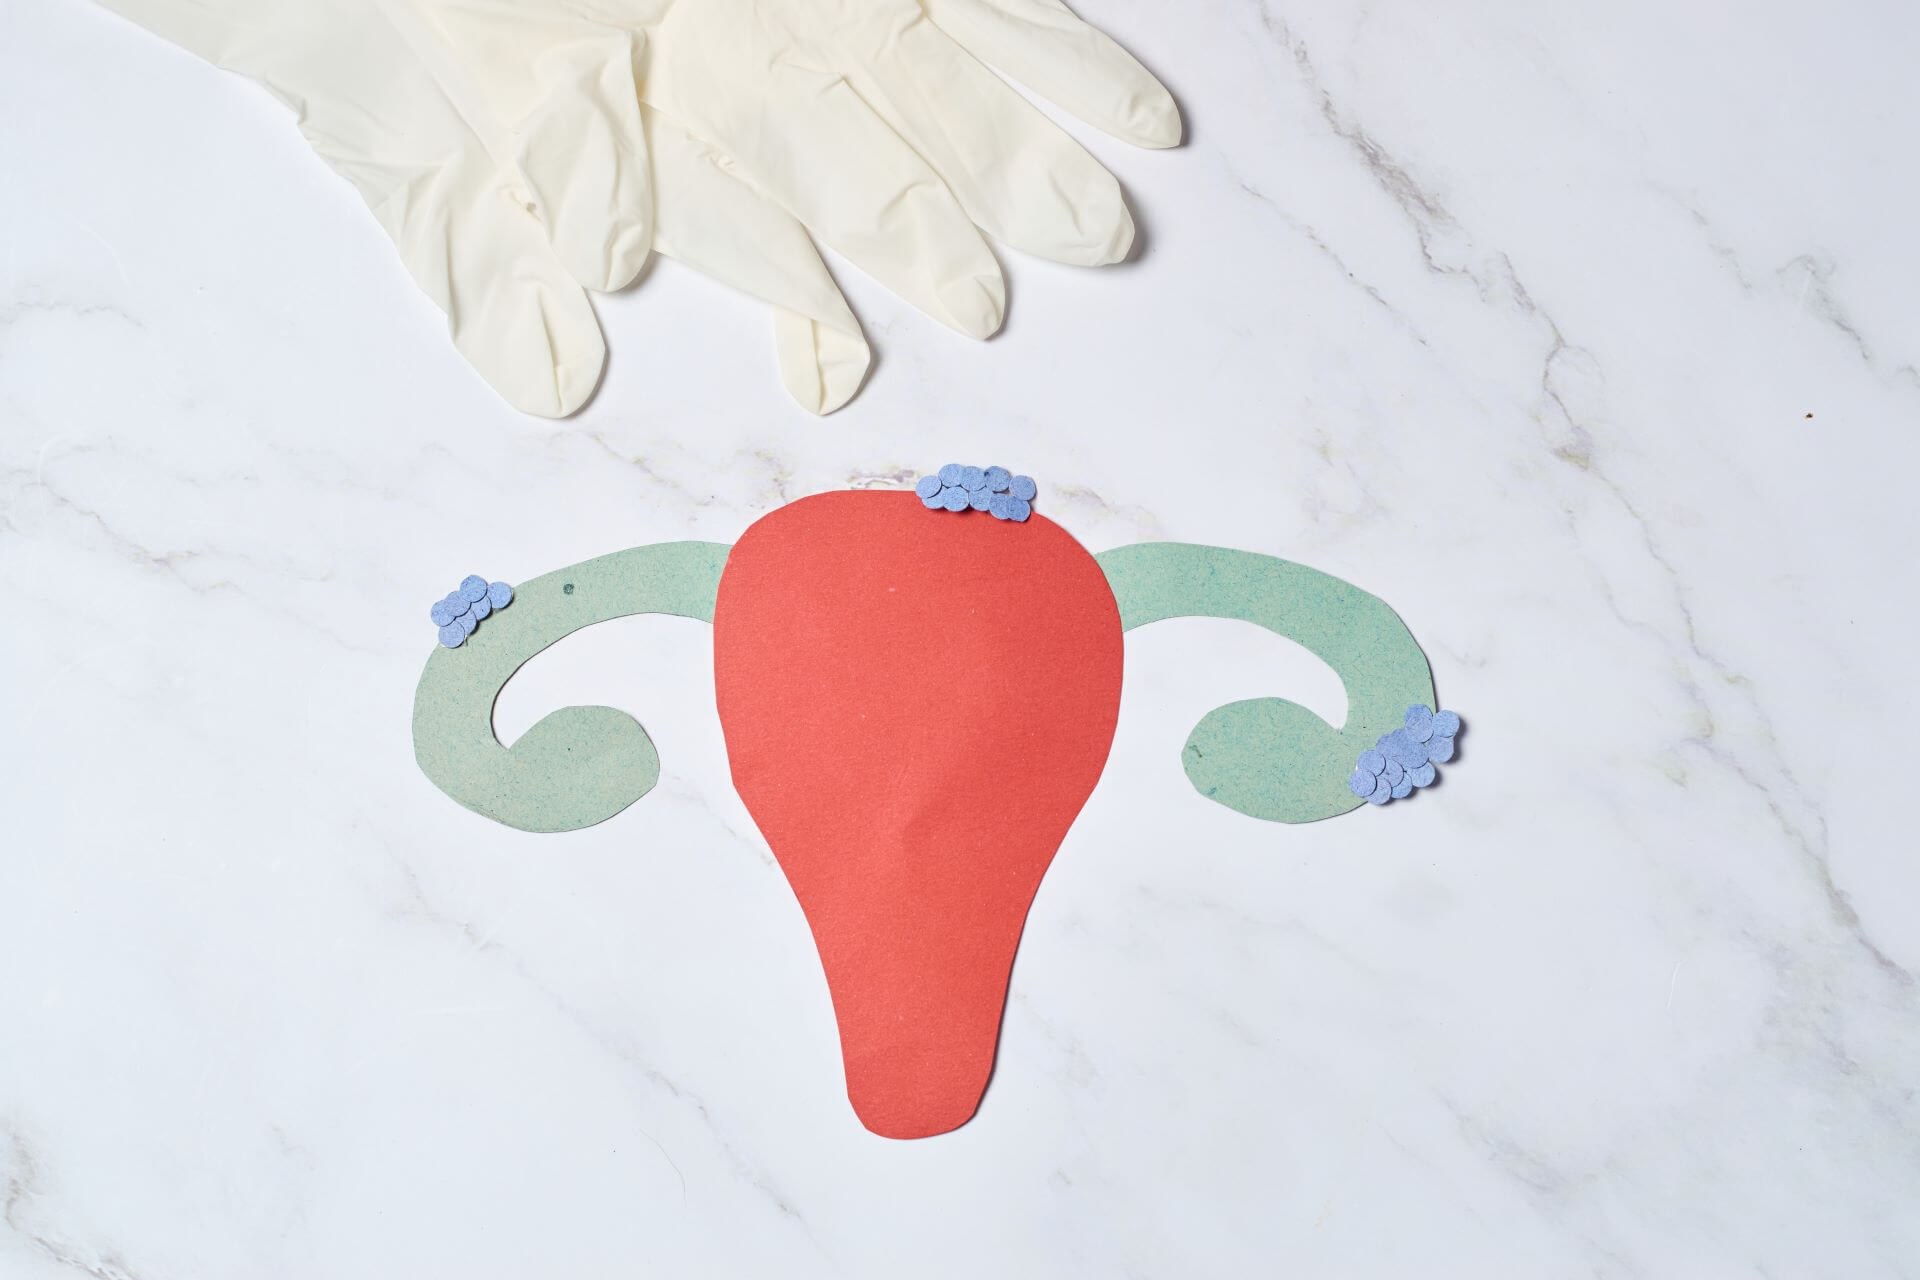 Você está visualizando atualmente Quando fazer colonoscopia na endometriose?